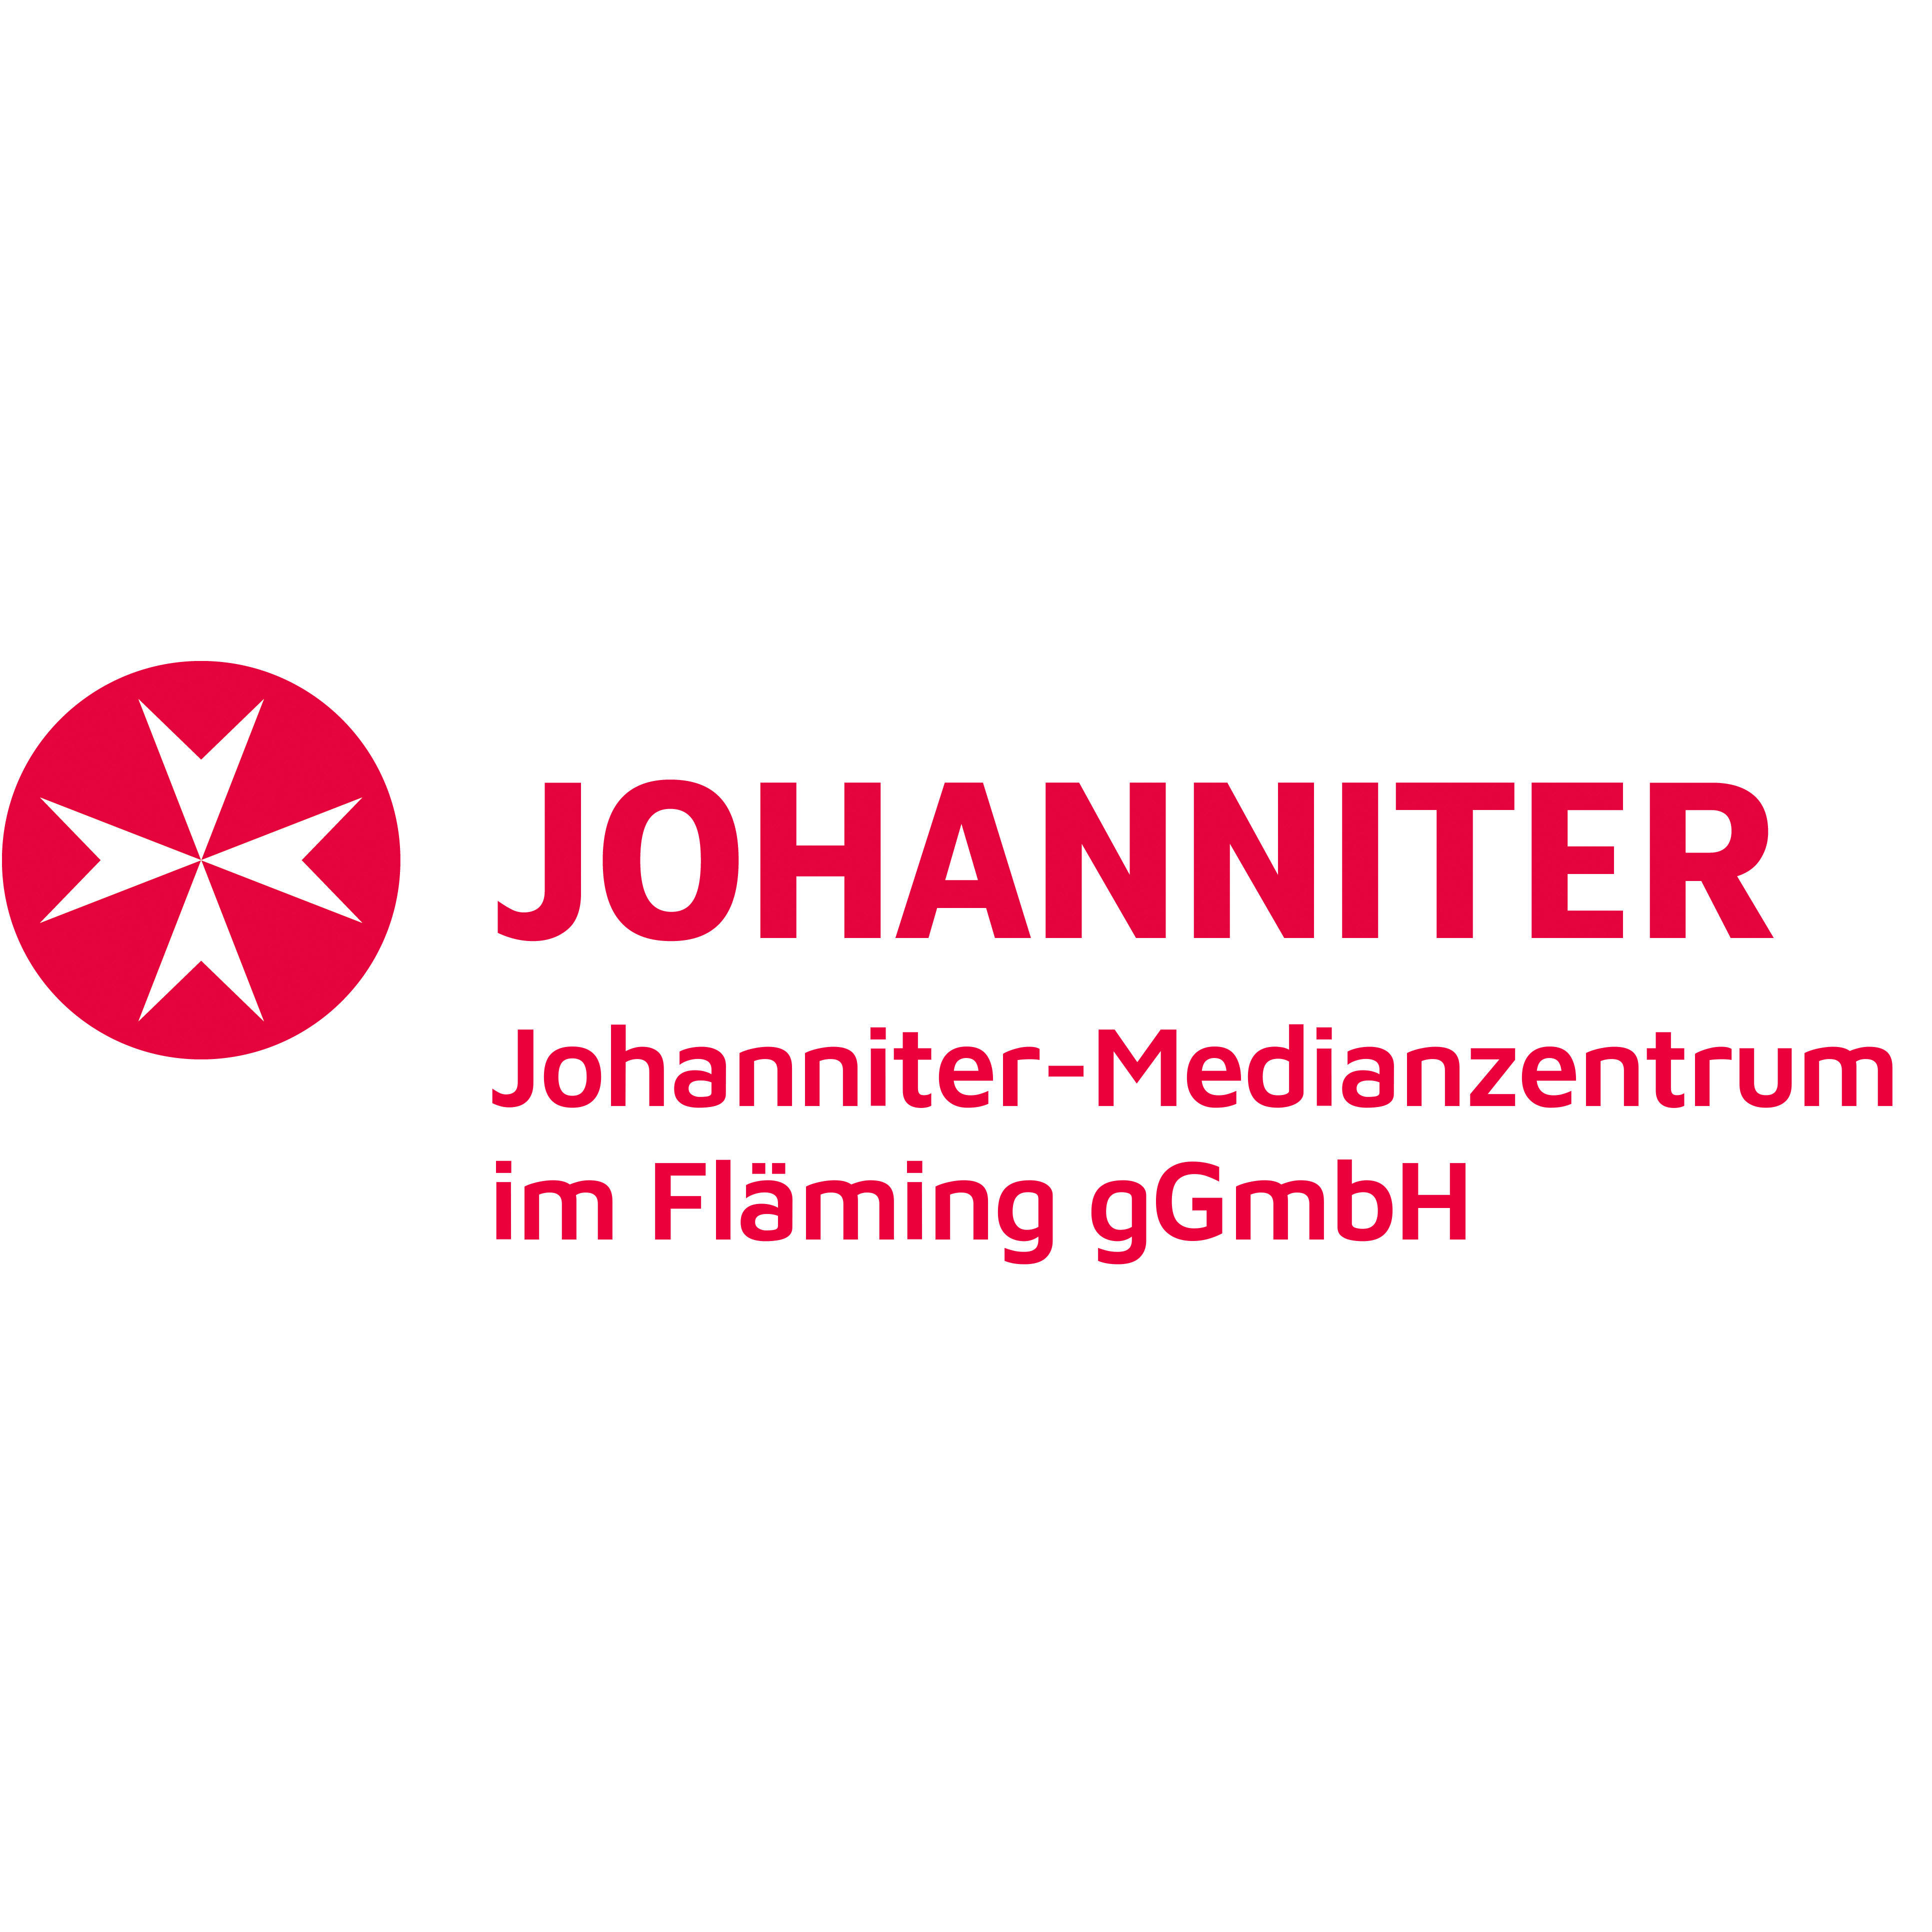 Johanniter-Medianzentrum im Fläming gGmbH in Treuenbrietzen - Logo